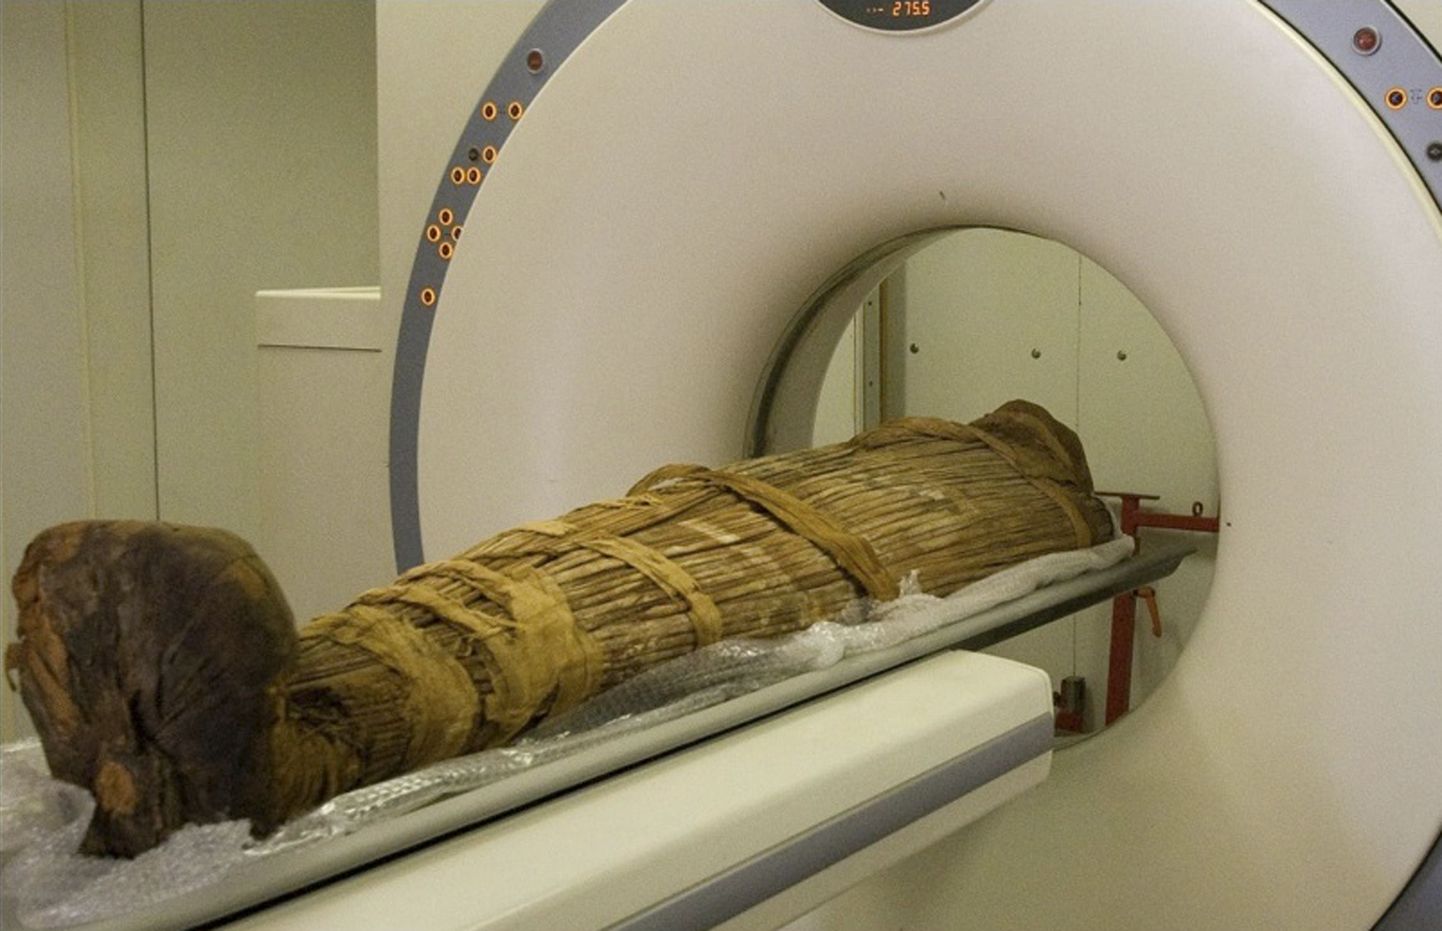 2600-aastase muumia koljust leiti aju väljatõmbamise konks